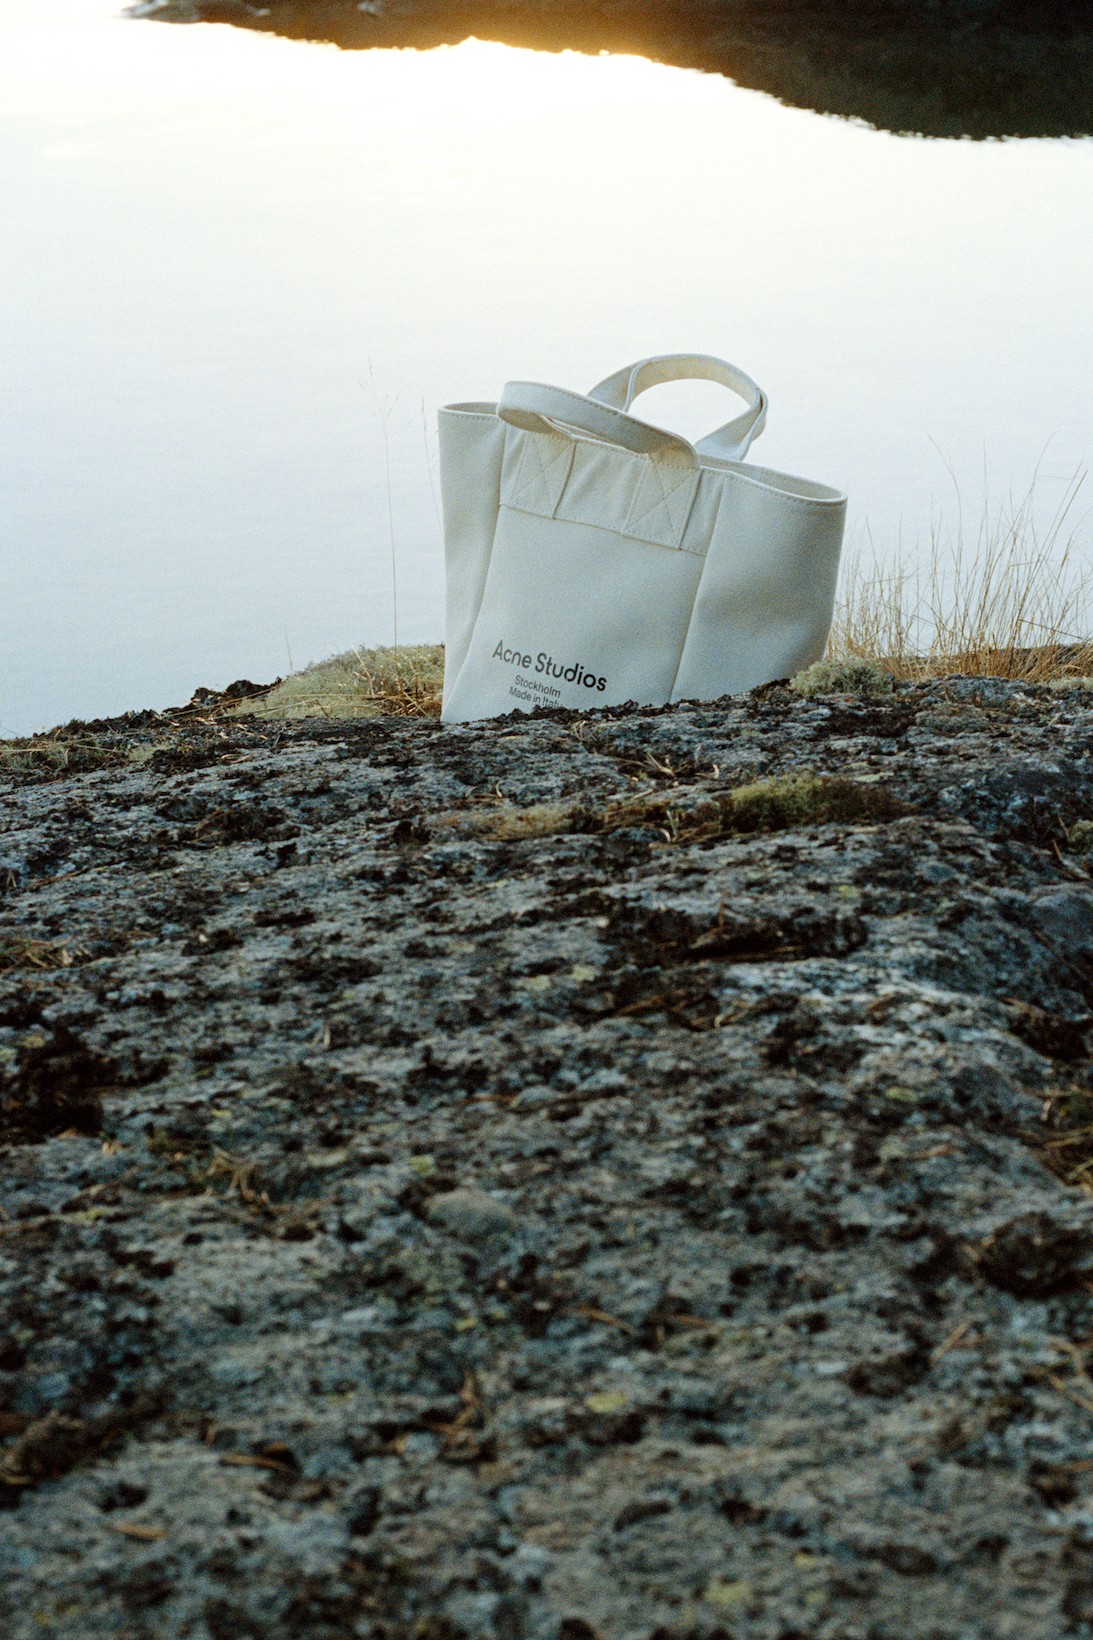 Acne Studios сделал съемку с сумками и головными уборами на острове в Швеции (фото 1)